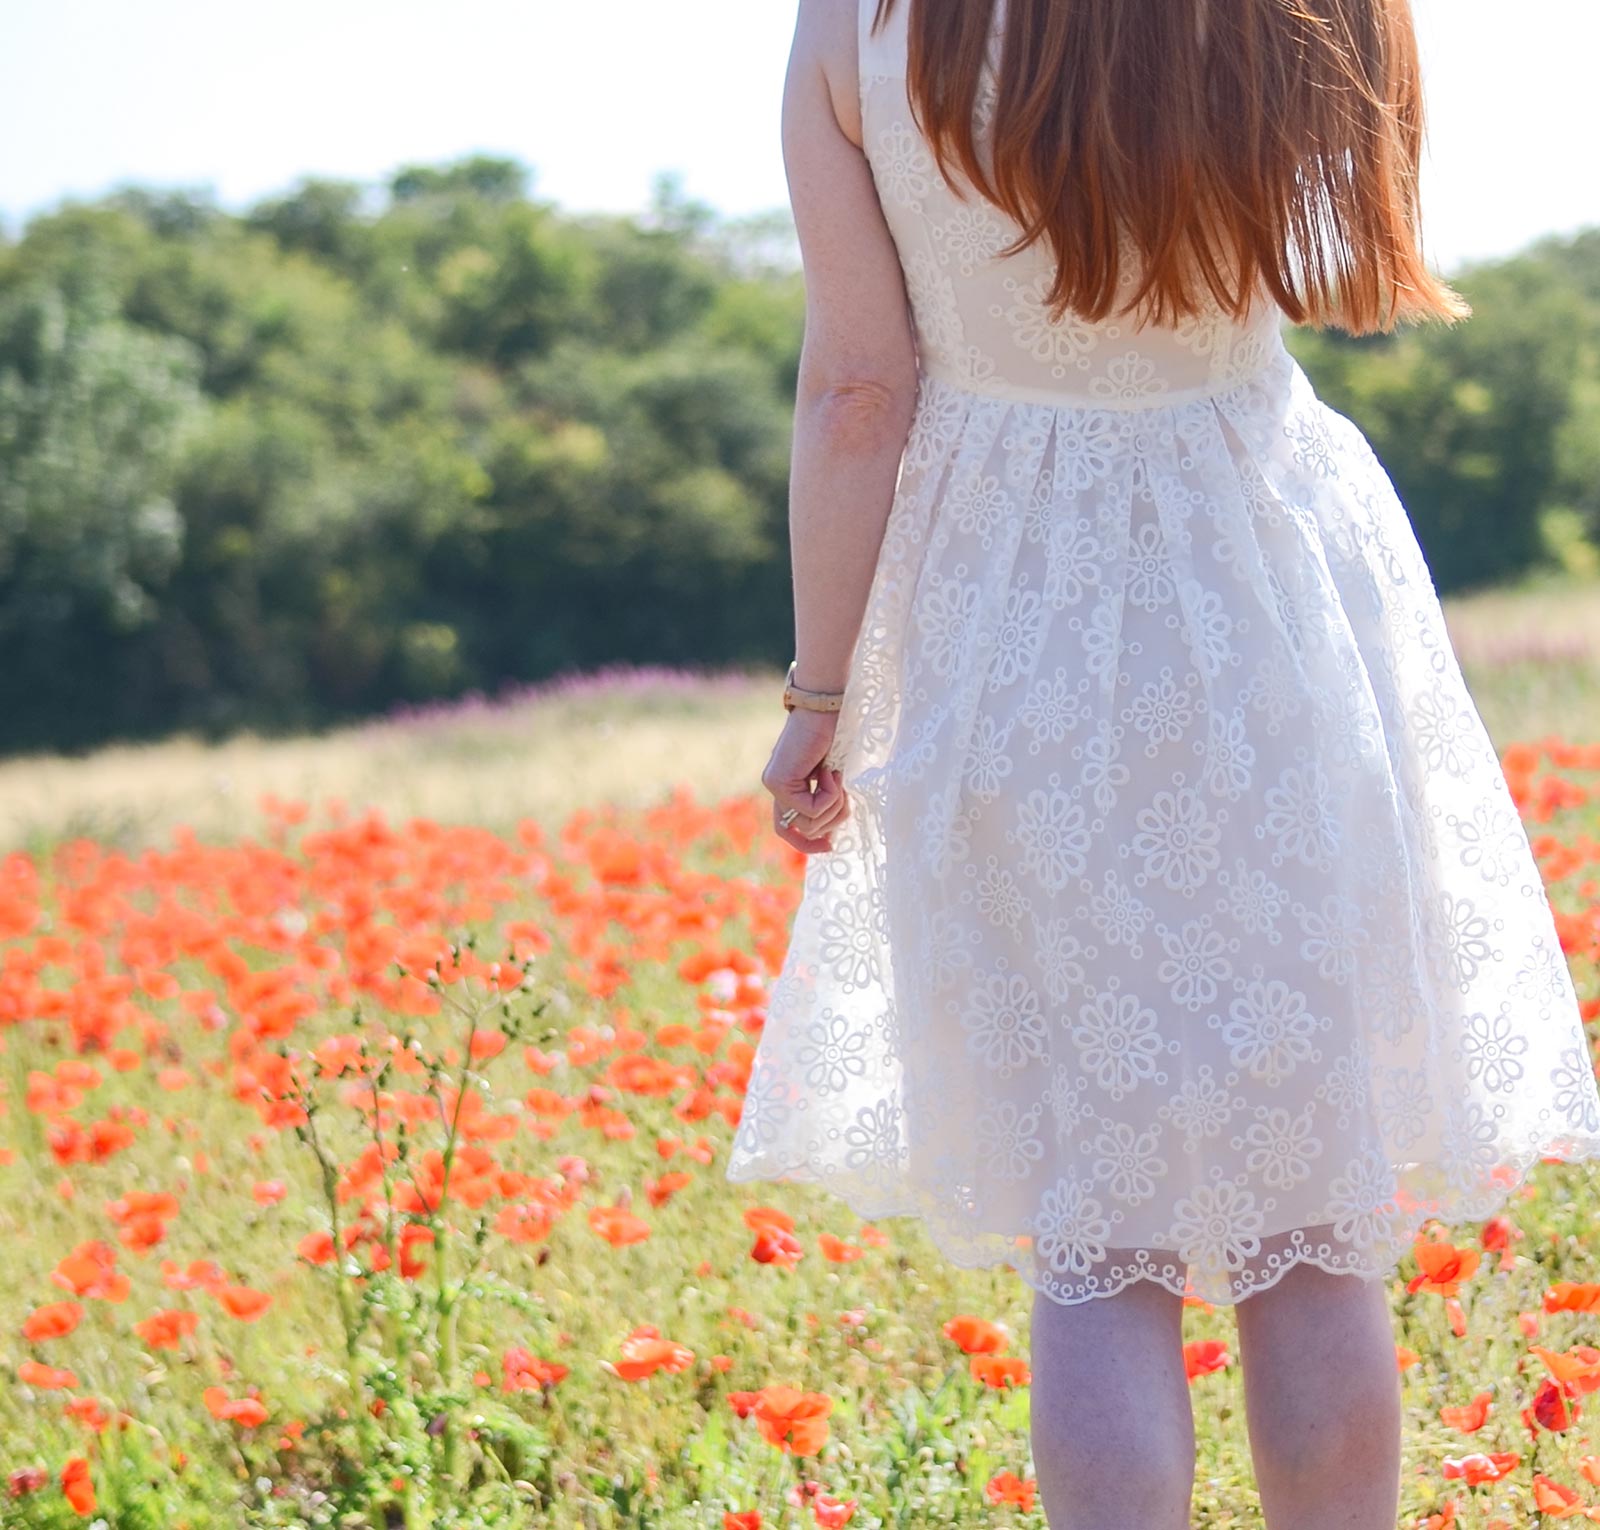 white dress in poppy field